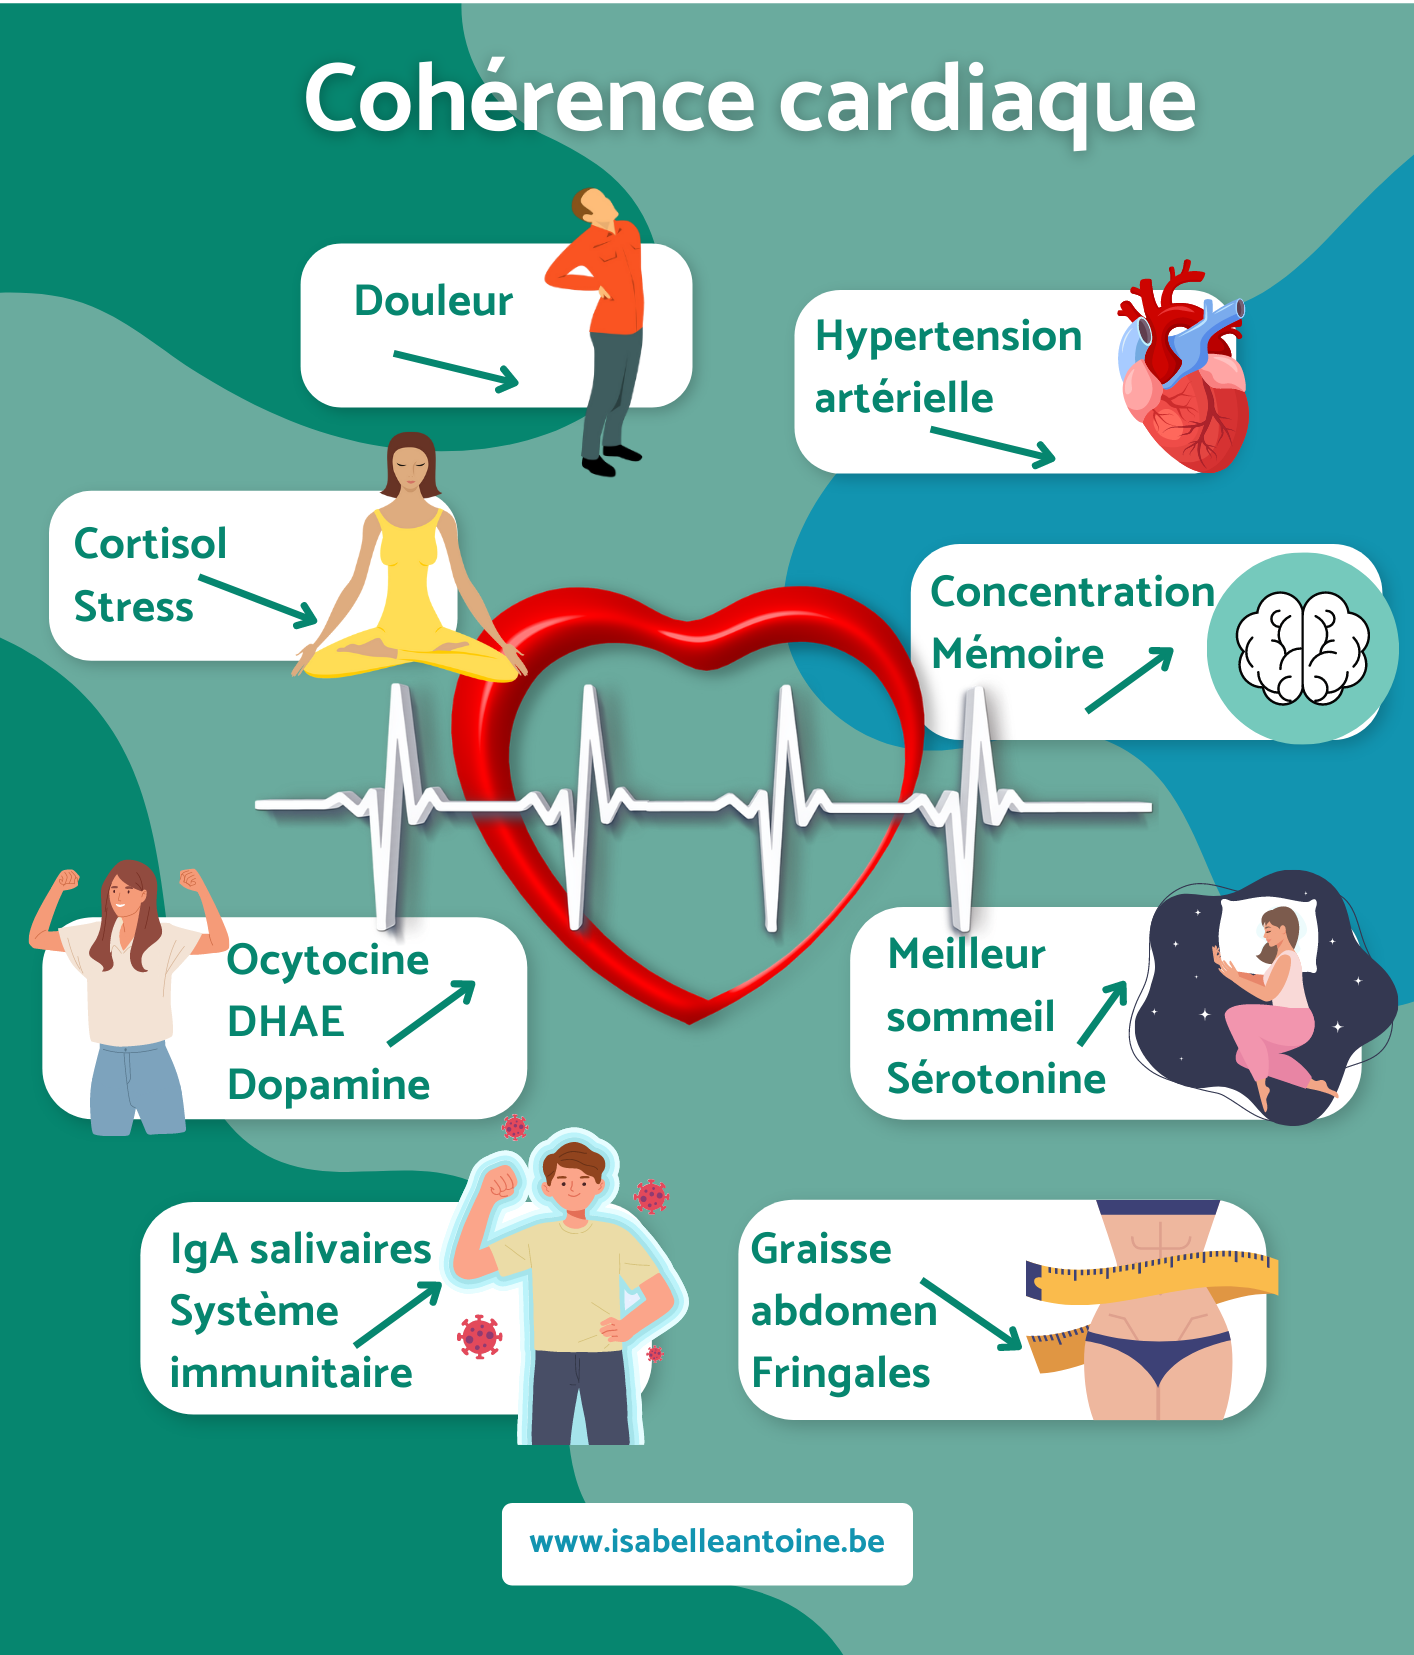 Les 5 bienfaits de la cohérence cardiaque sur le sommeil (J'ai